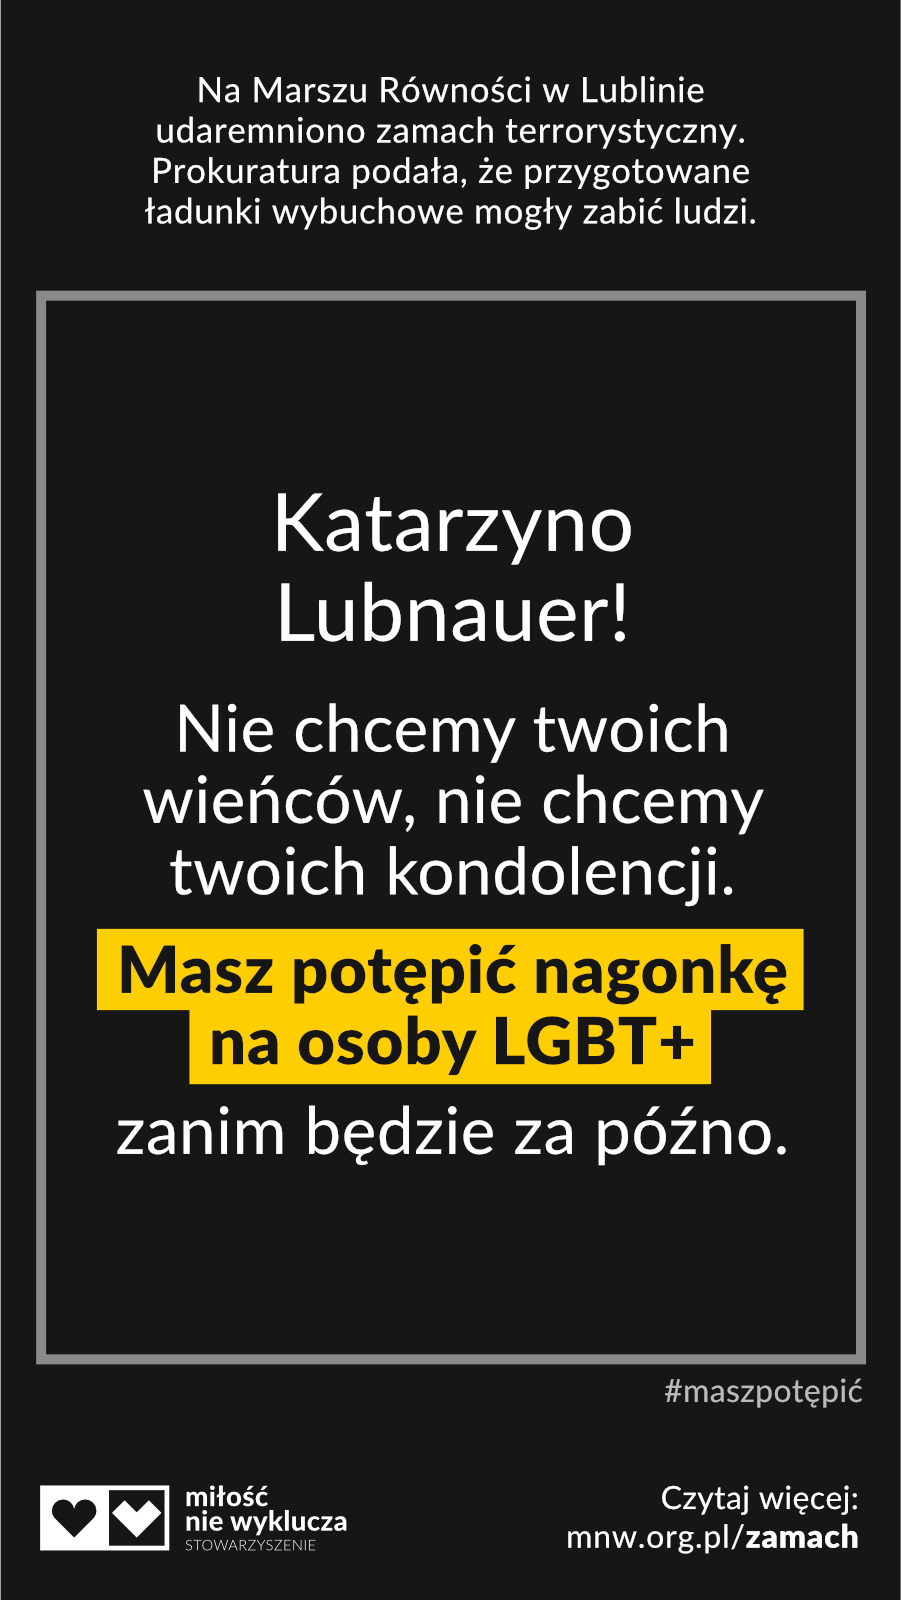 Lubnauer #maszpotepic zamach LGBT+